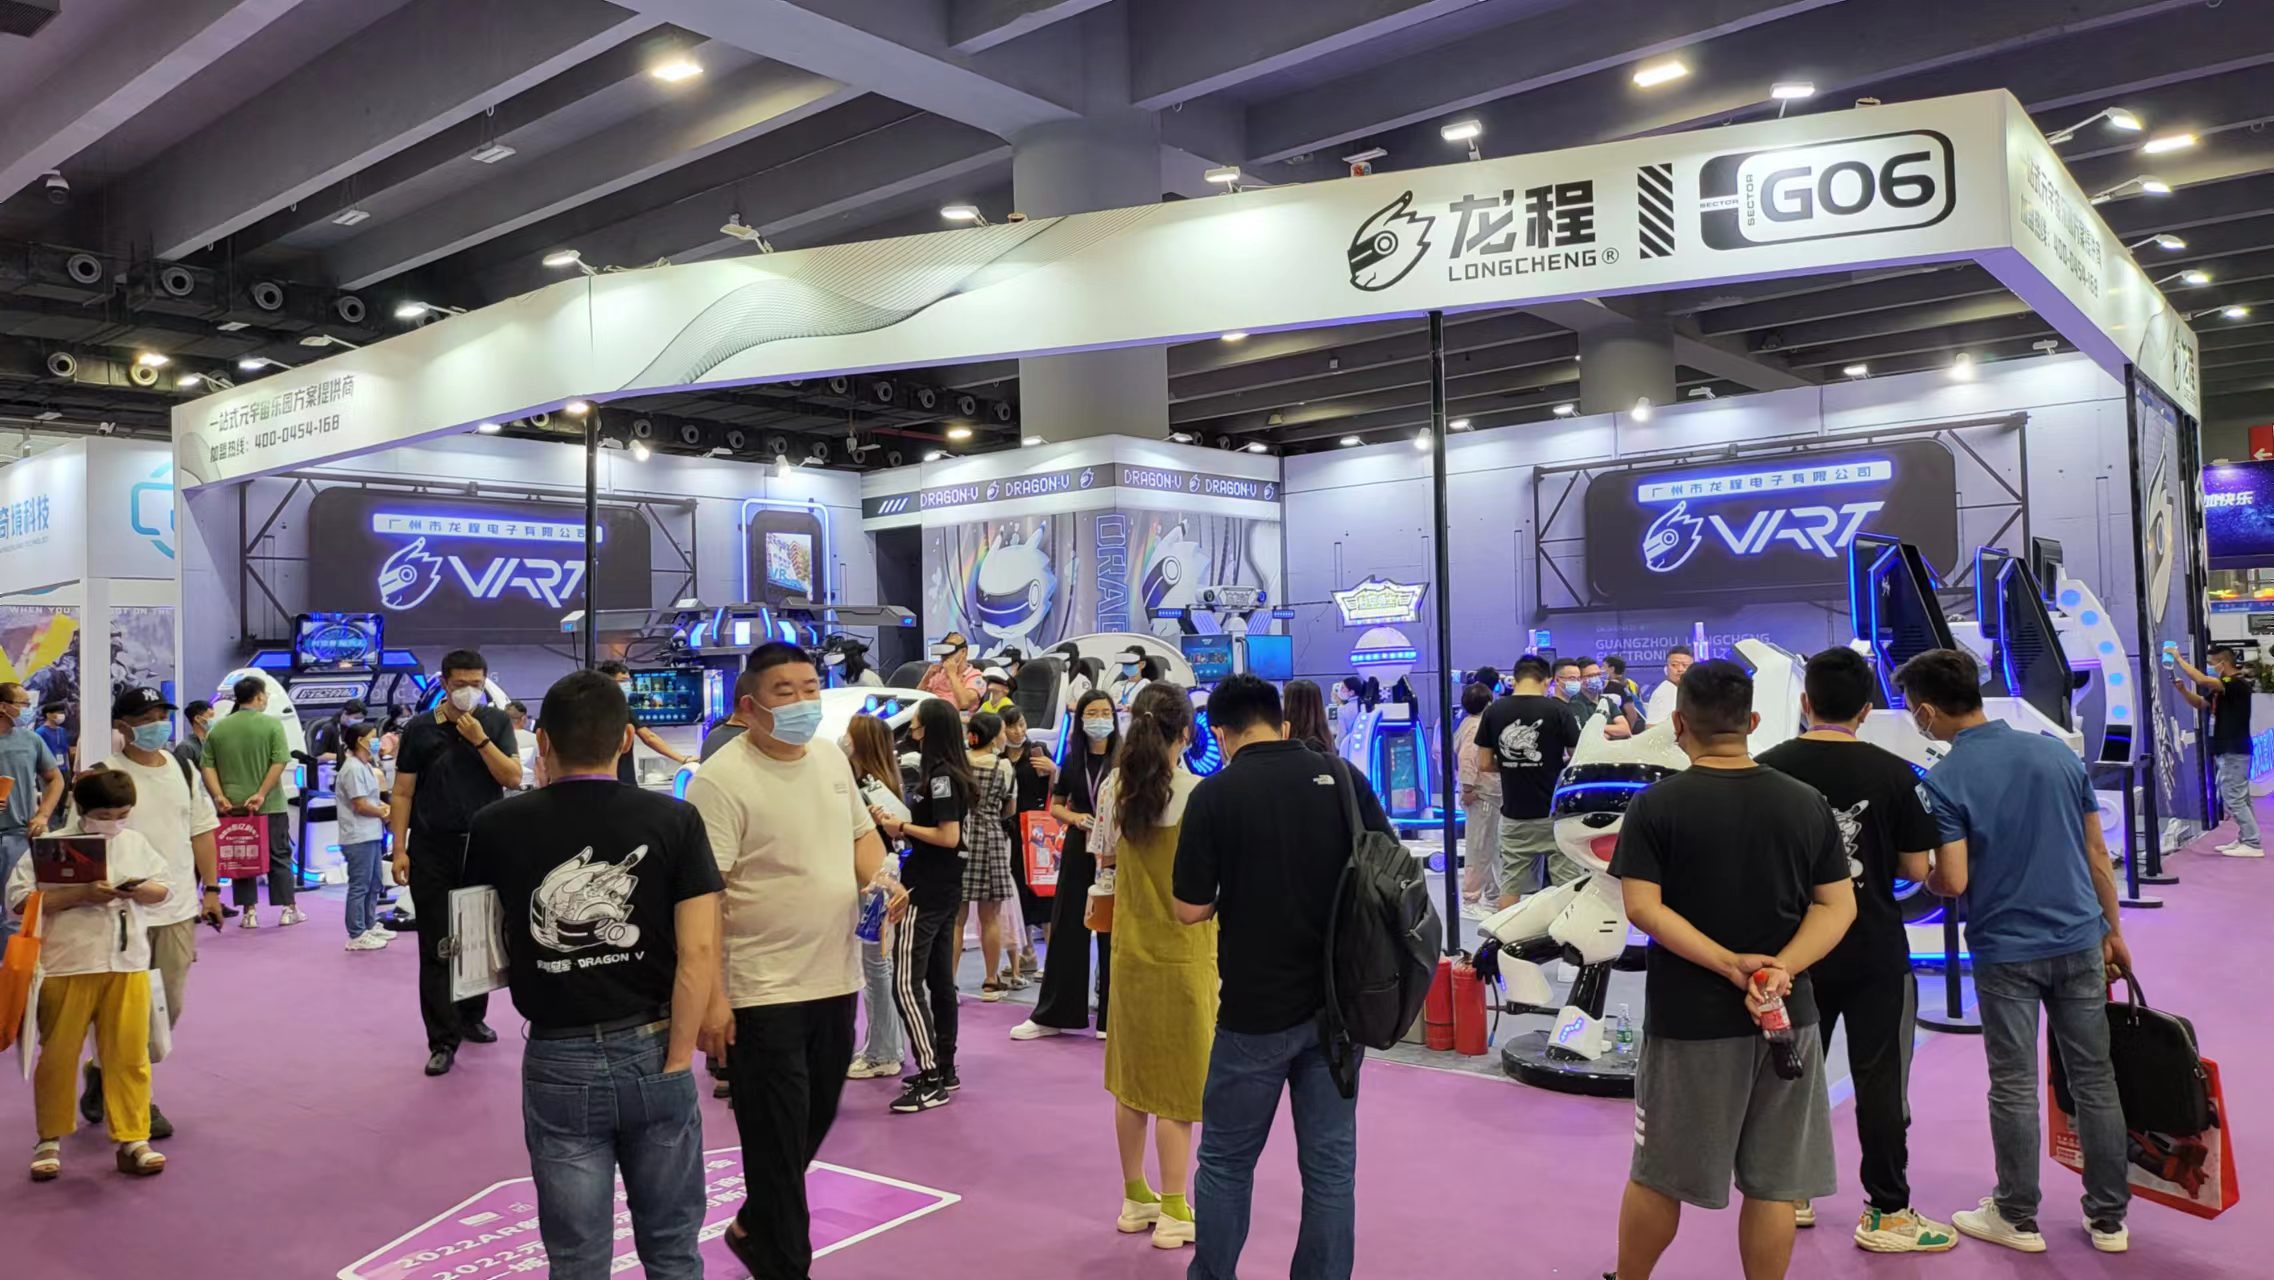 VART VR |Guangzhou Metaverse Pêşangeha Booth G06 Bi rastî Popular